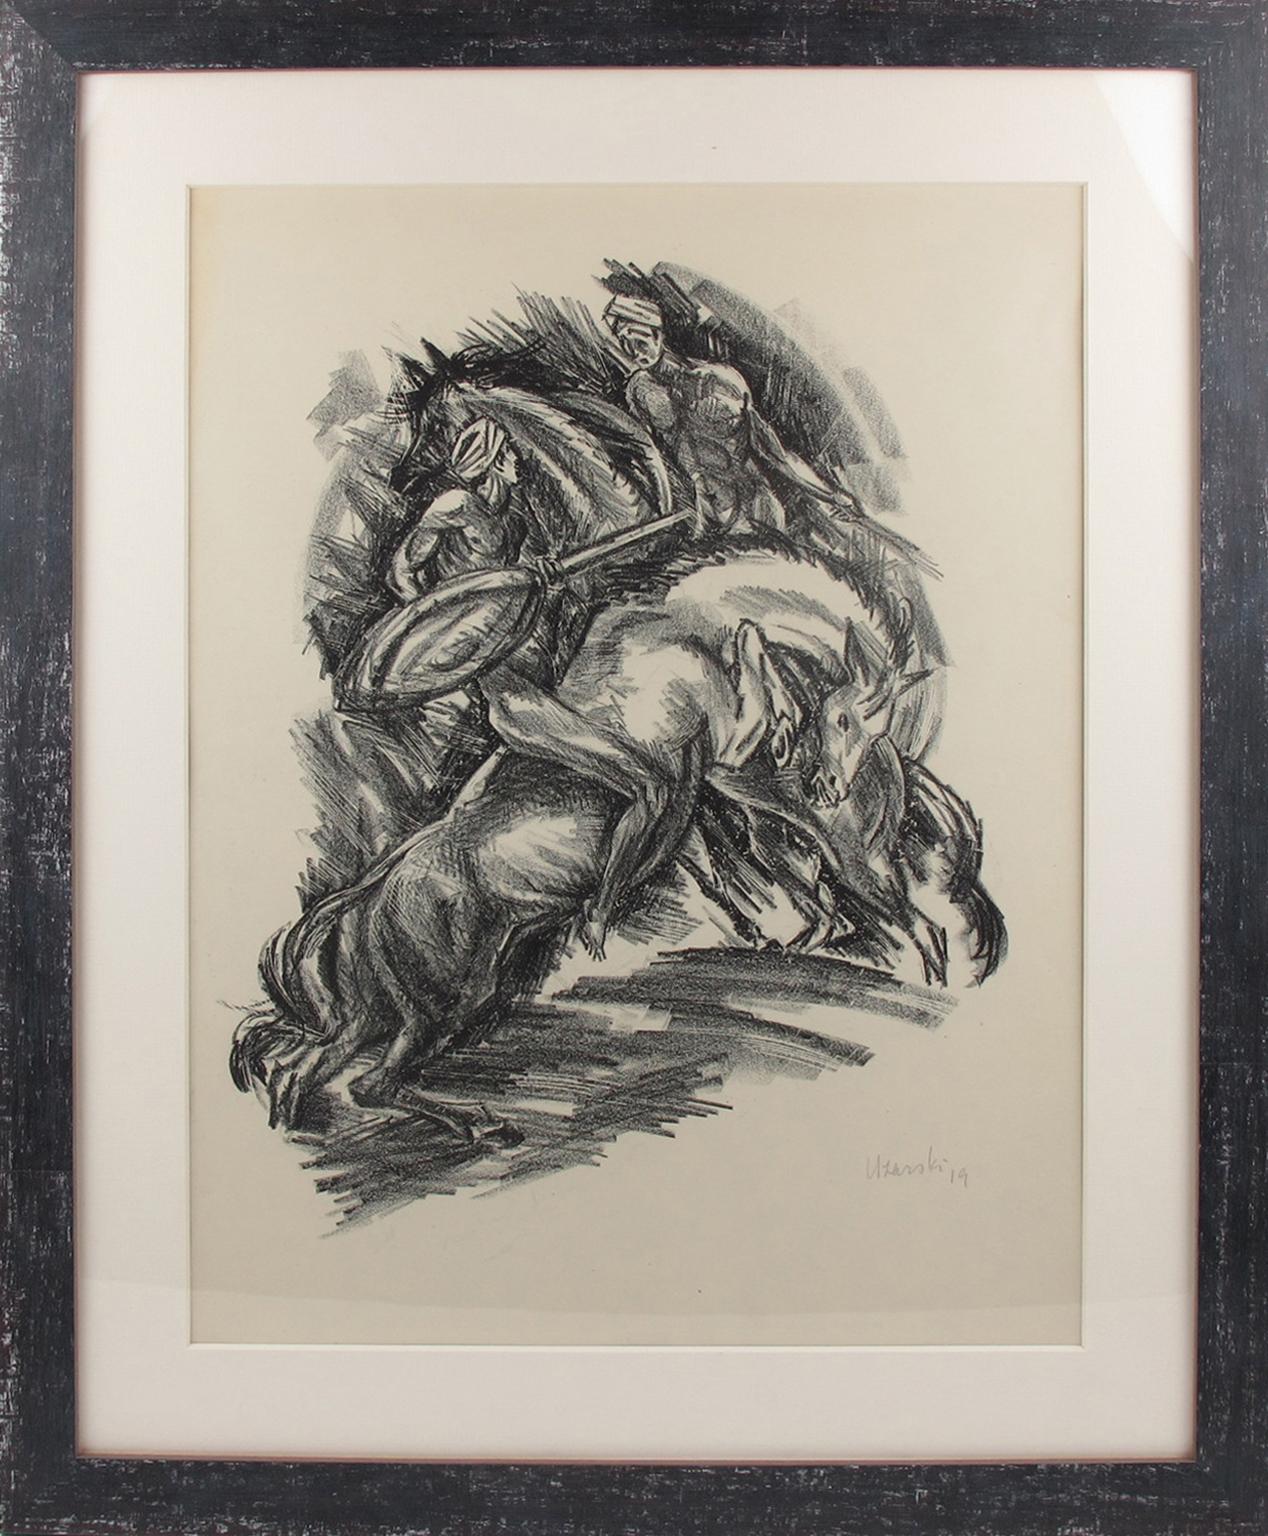 L'artiste allemand Adolf Uzarski (1885 - 1970) a conçu cette étonnante lithographie sur papier, dessinée au fusain, représentant deux cavaliers dans une danse ou un combat sauvage. Ce dessin fait partie d'un ensemble de cinq lithographies réalisées